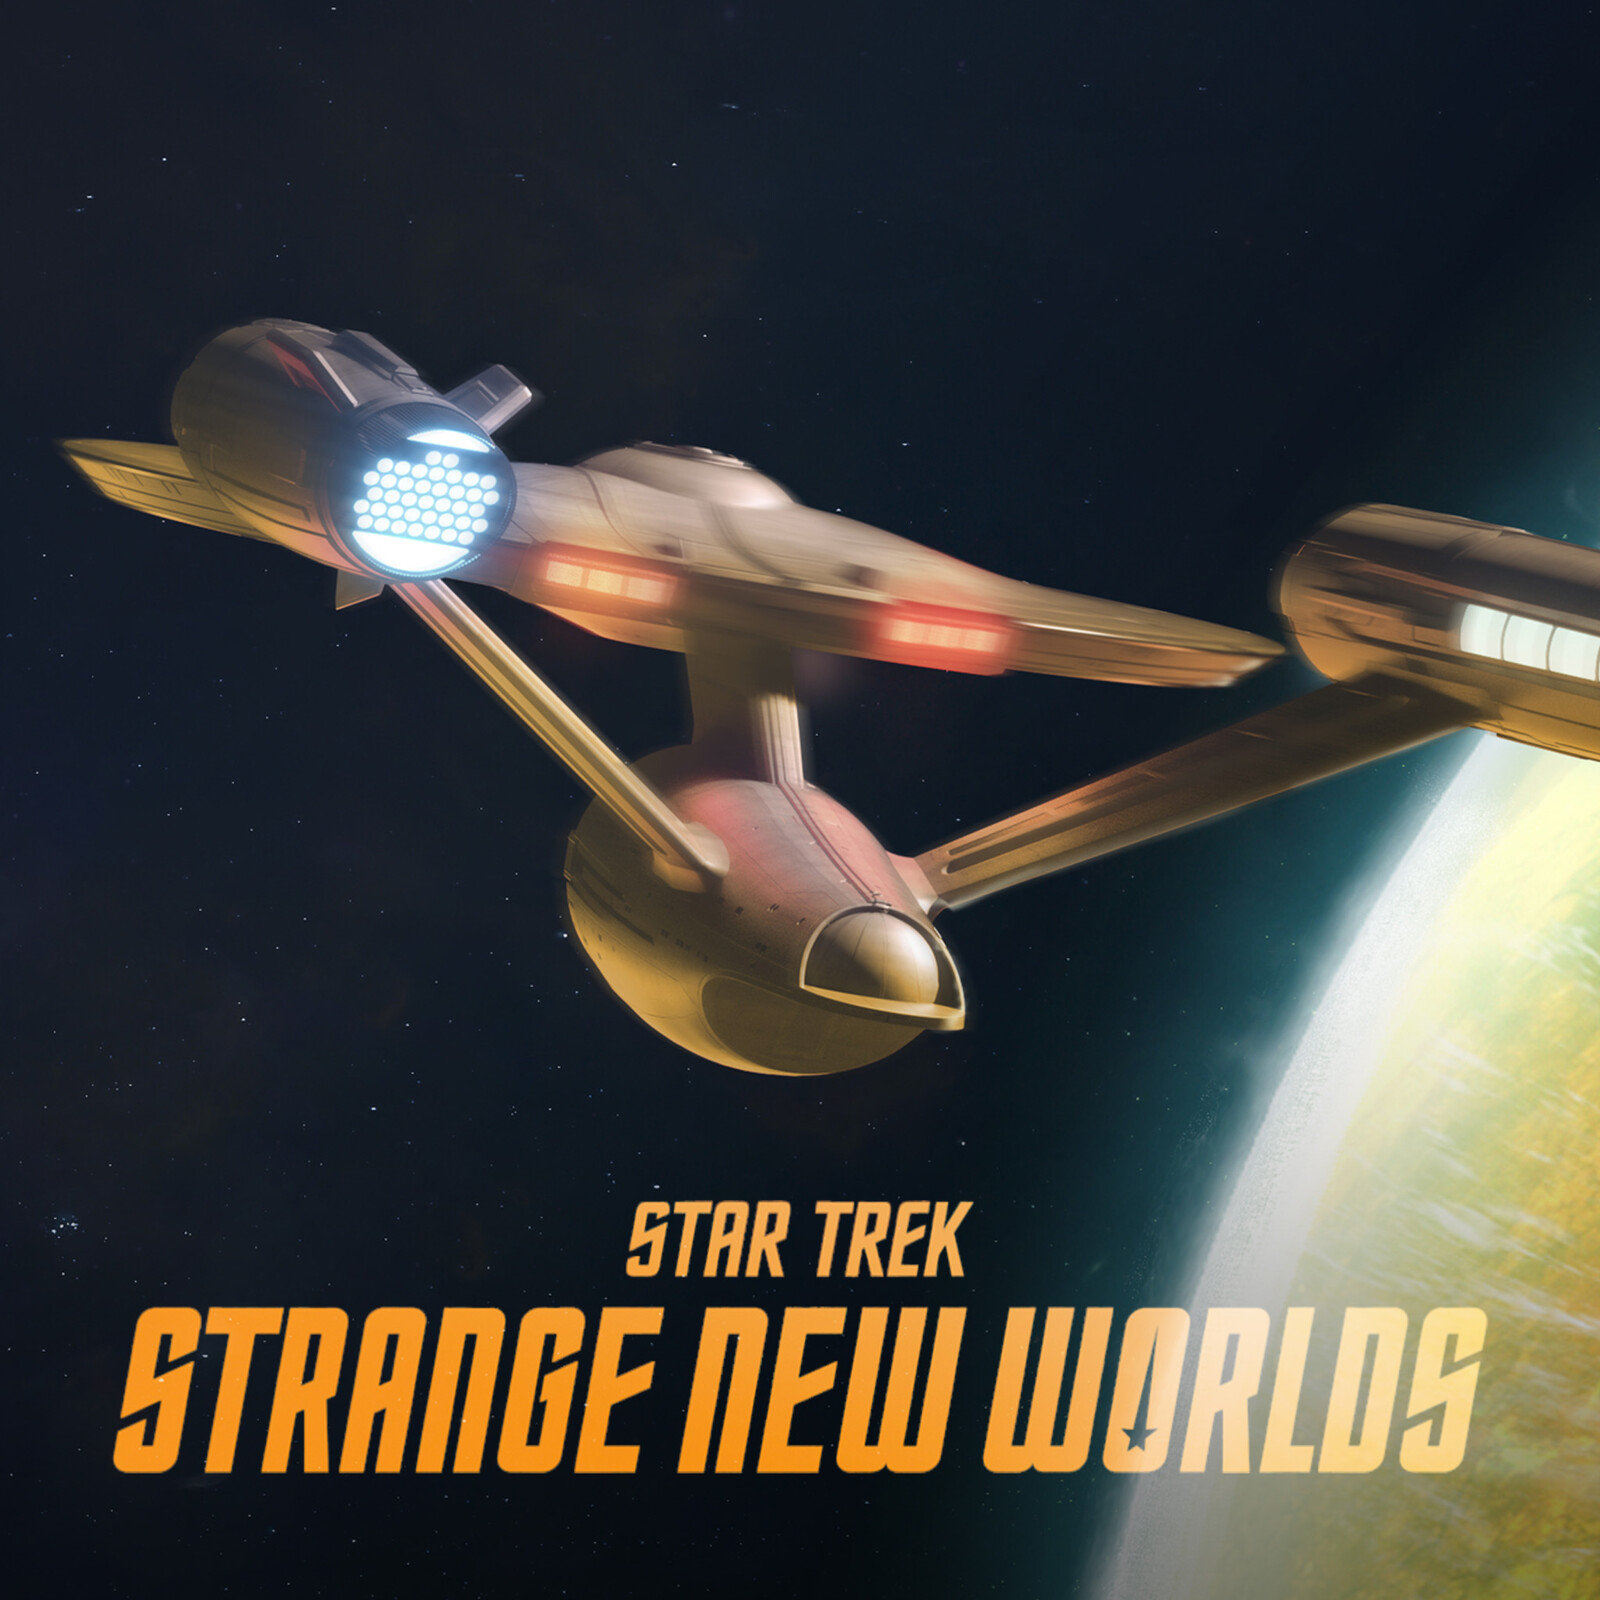 Star Trek: Strange New Worlds - Persephone III